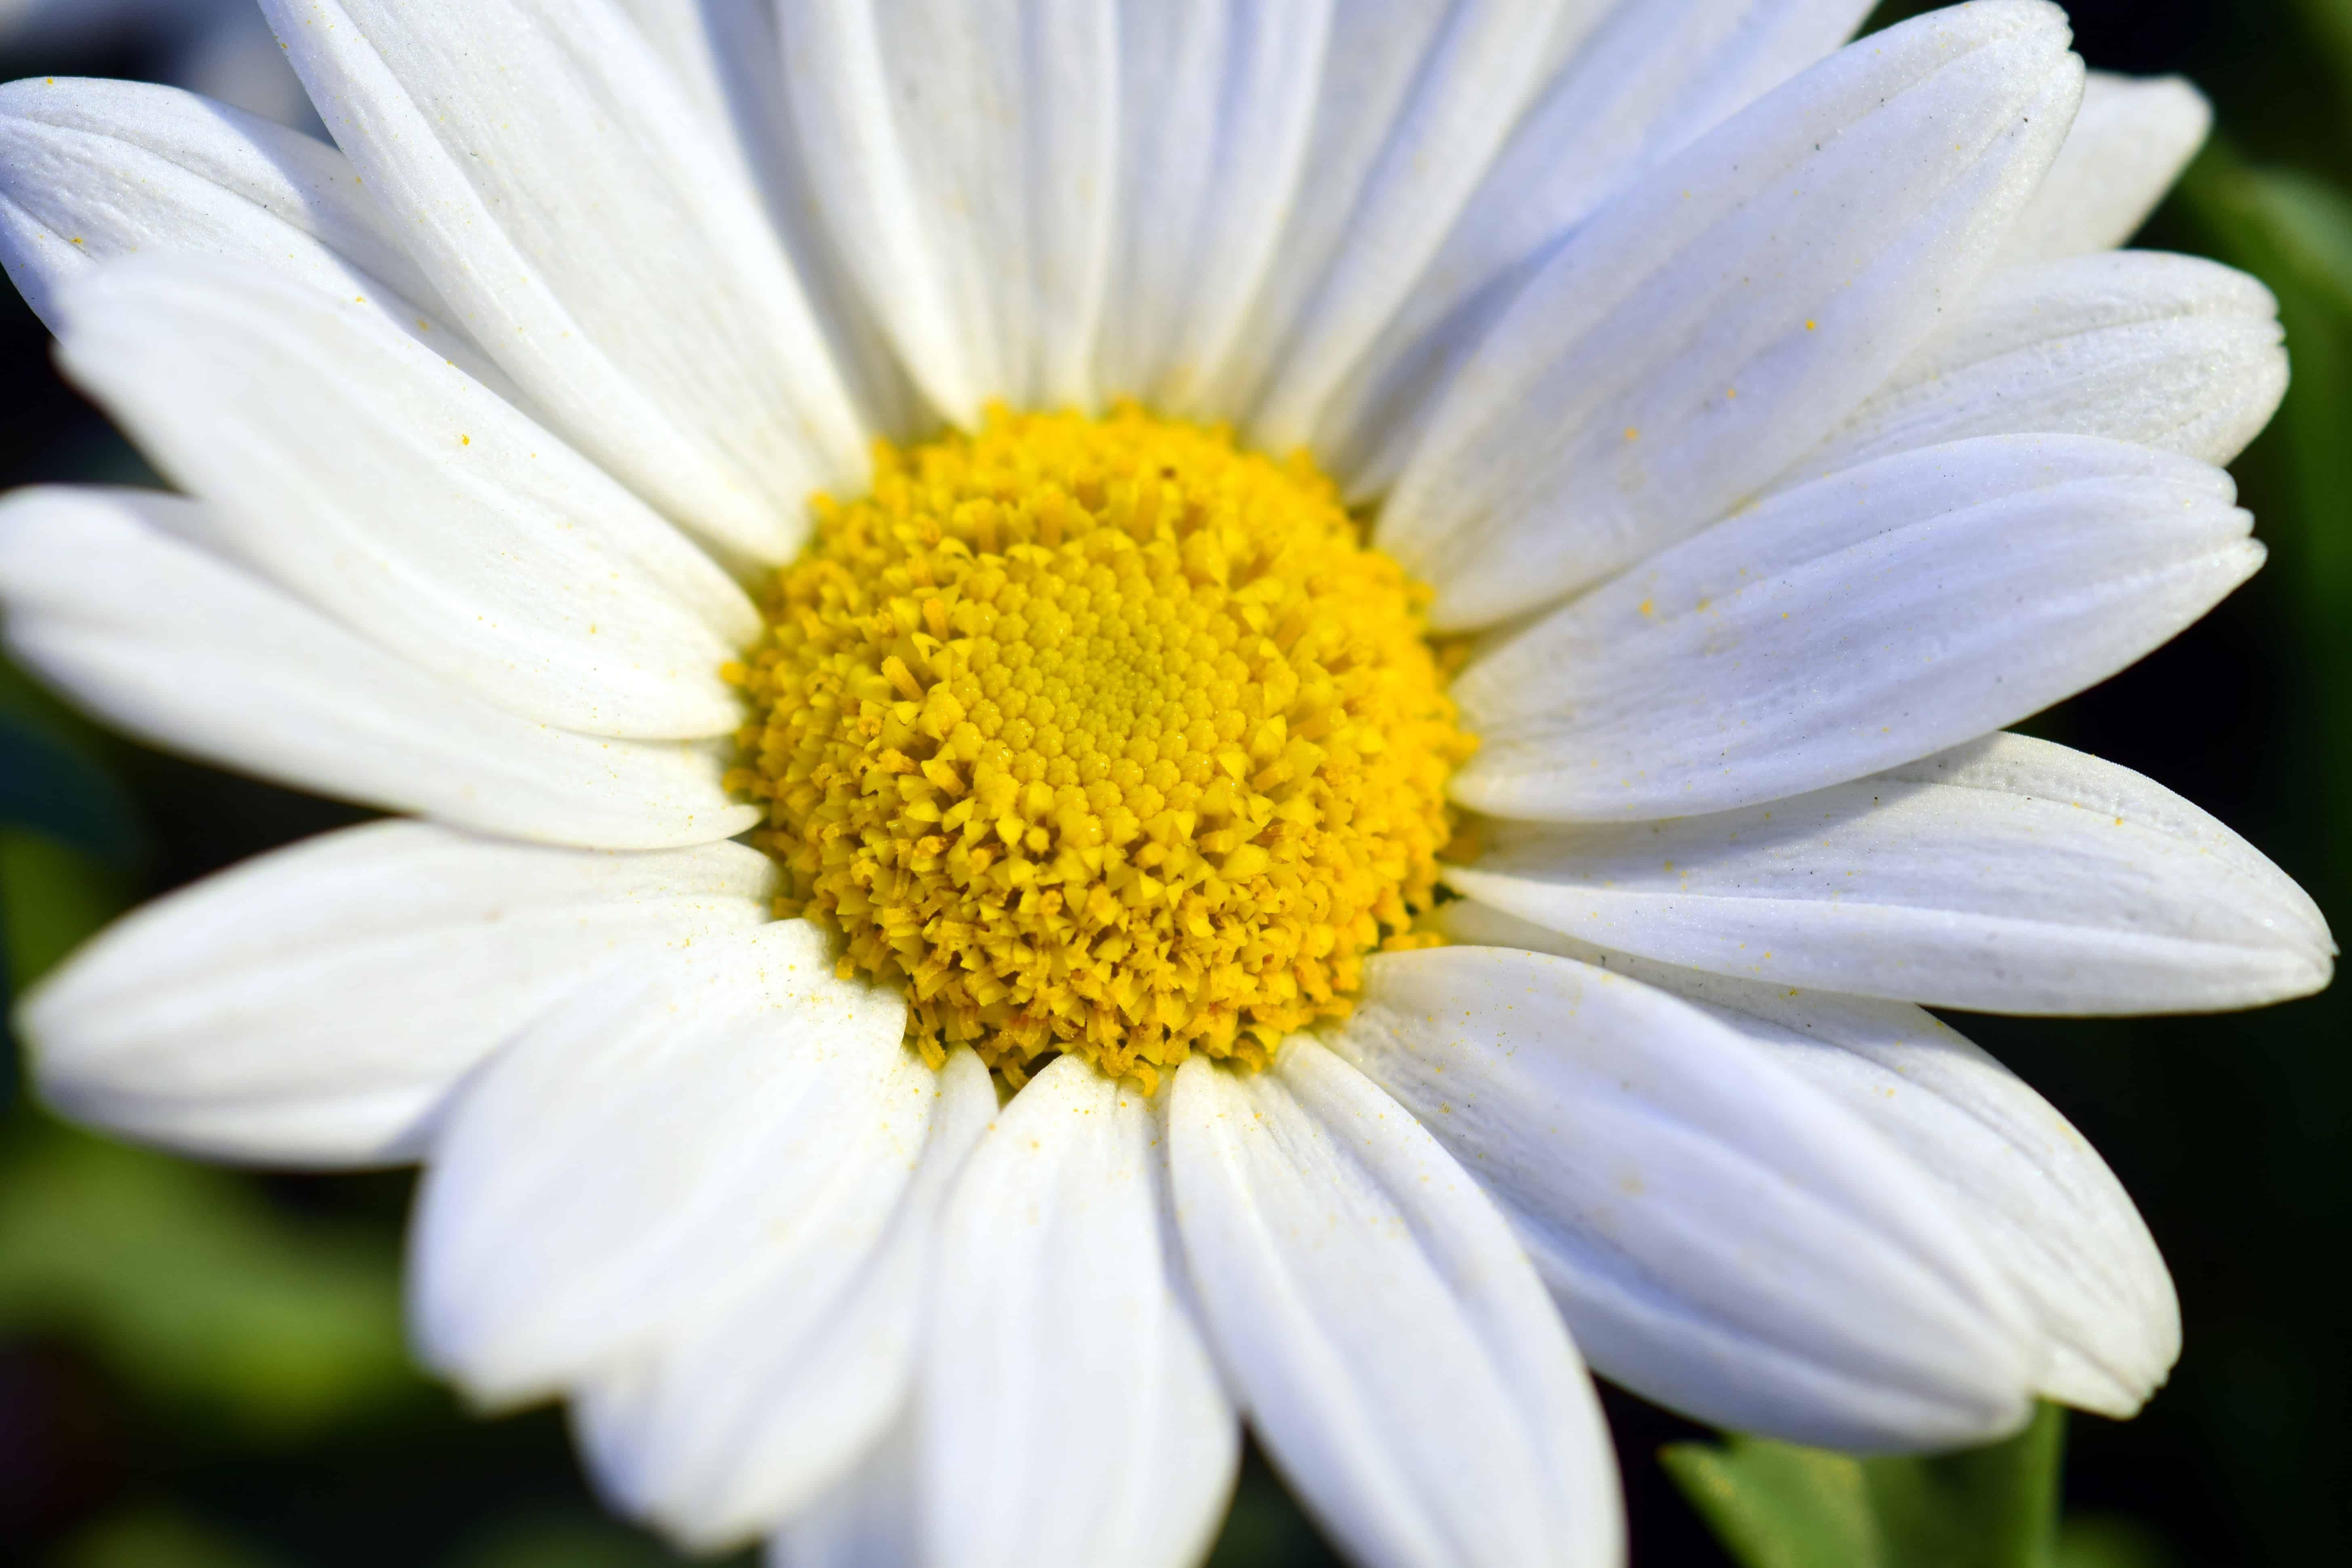 Image libre: horticulture, été, jardin, flore, nature, fleur blanche, fleur,  pétale, plante